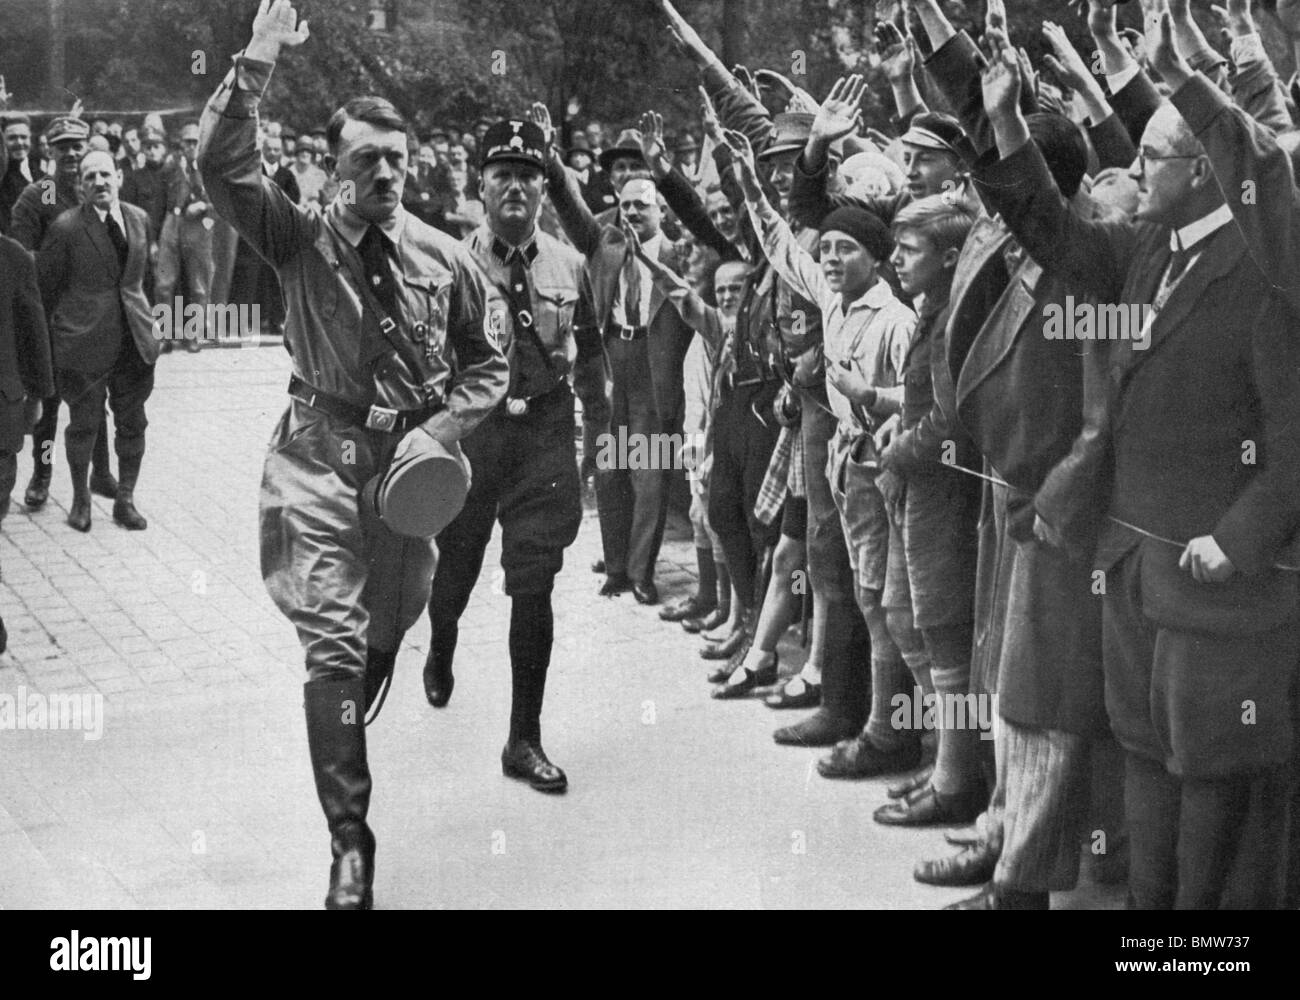 ADOLF HITLER arrive pour 4e Congrès Nazi de Nuremberg en 1937 Banque D'Images